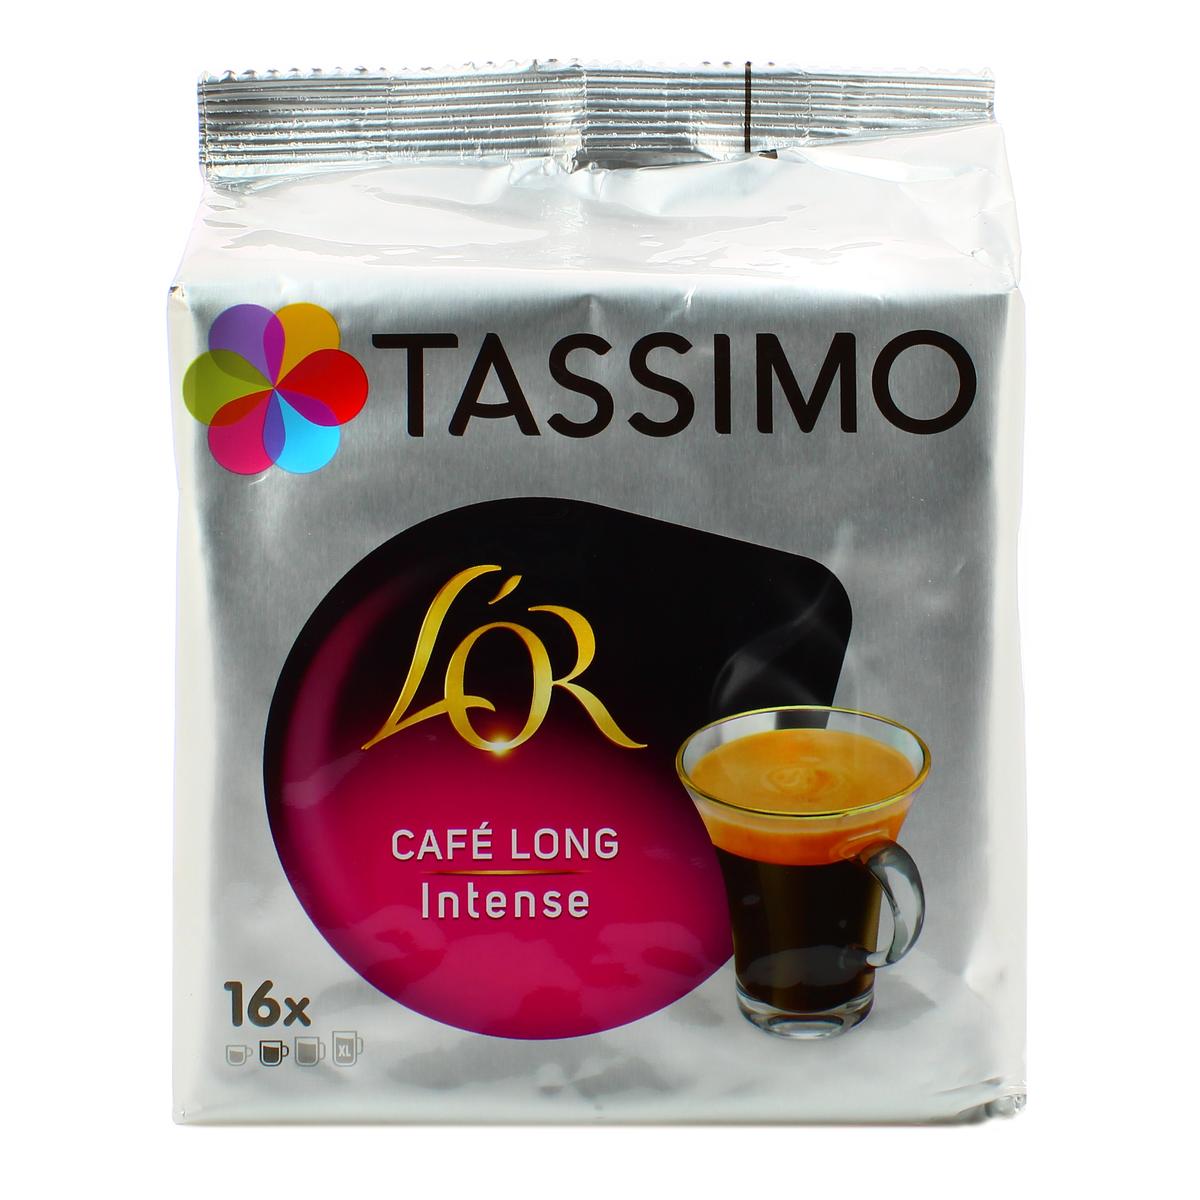 Livraison à domicile de café Tassimo Dosettes Long intense x16 128g